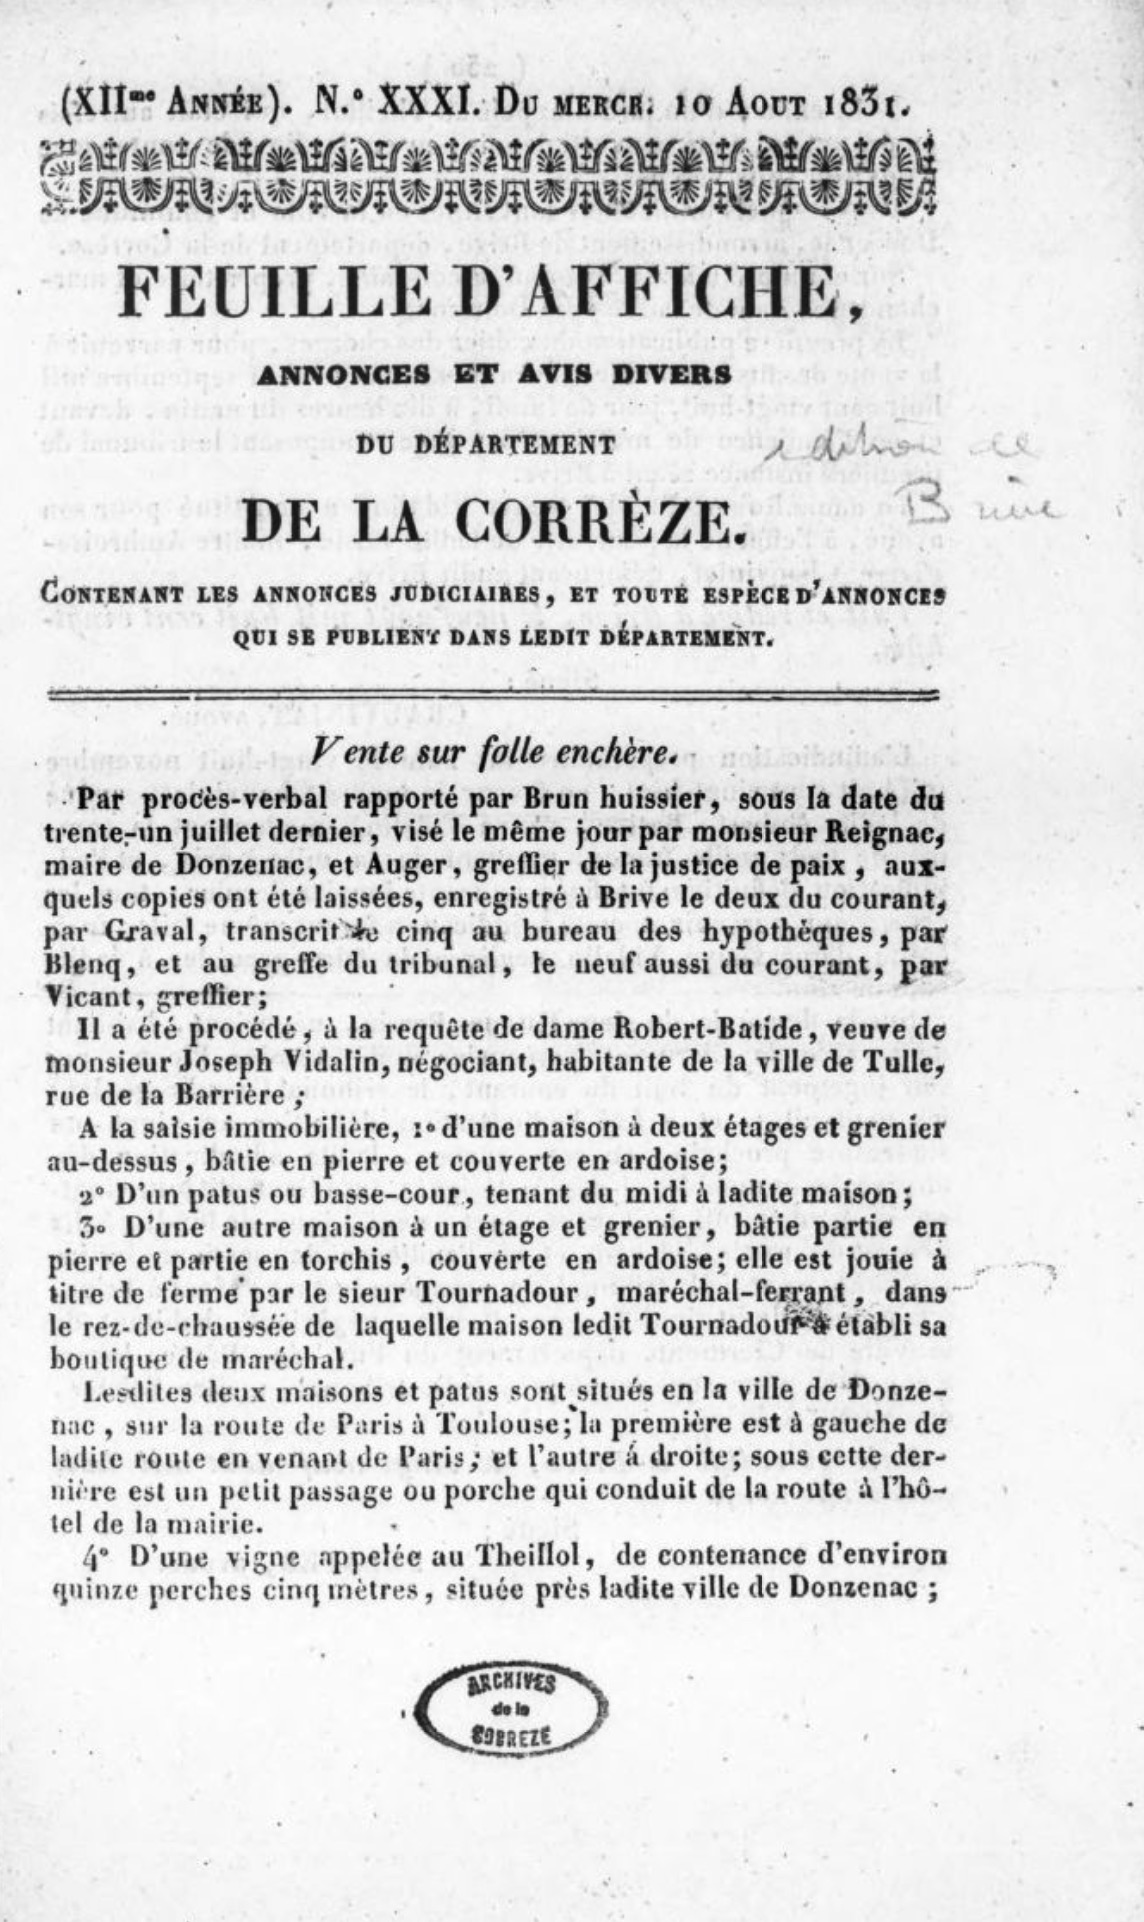 Feuille d'affiche, annonces et avis divers de l'arrondissement de Brive, département de la Corrèze (1820-1835)